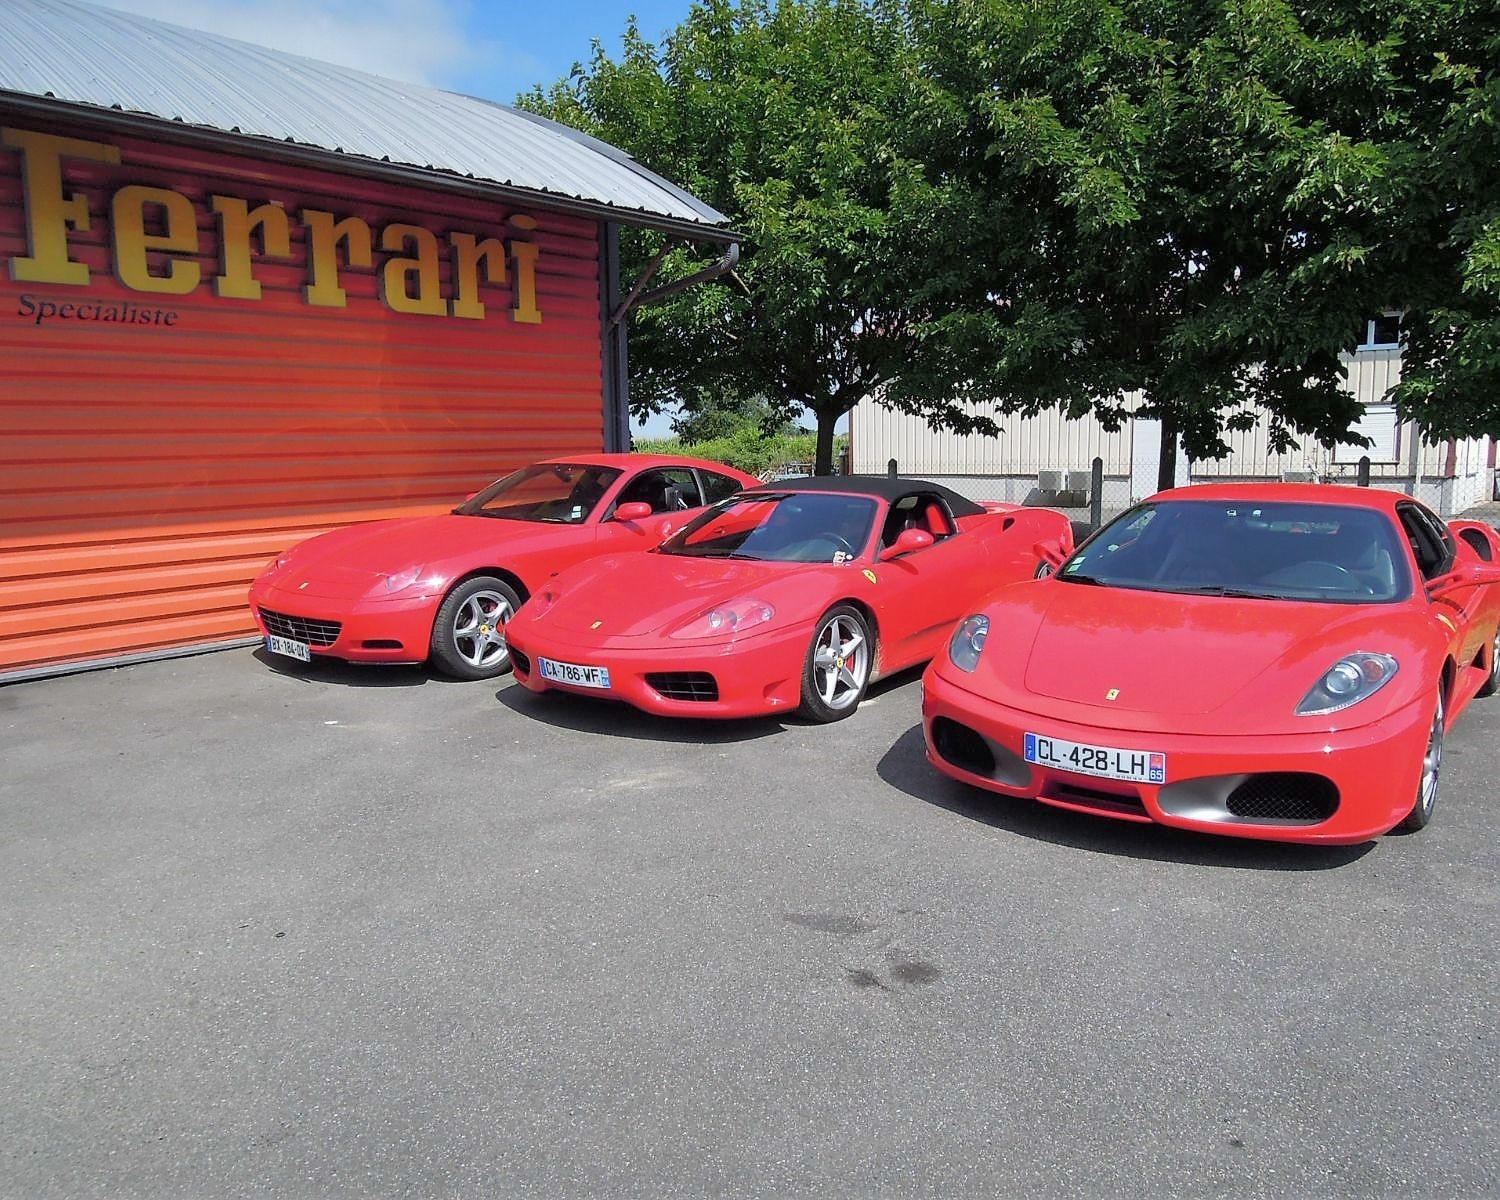 Ferrari's garage